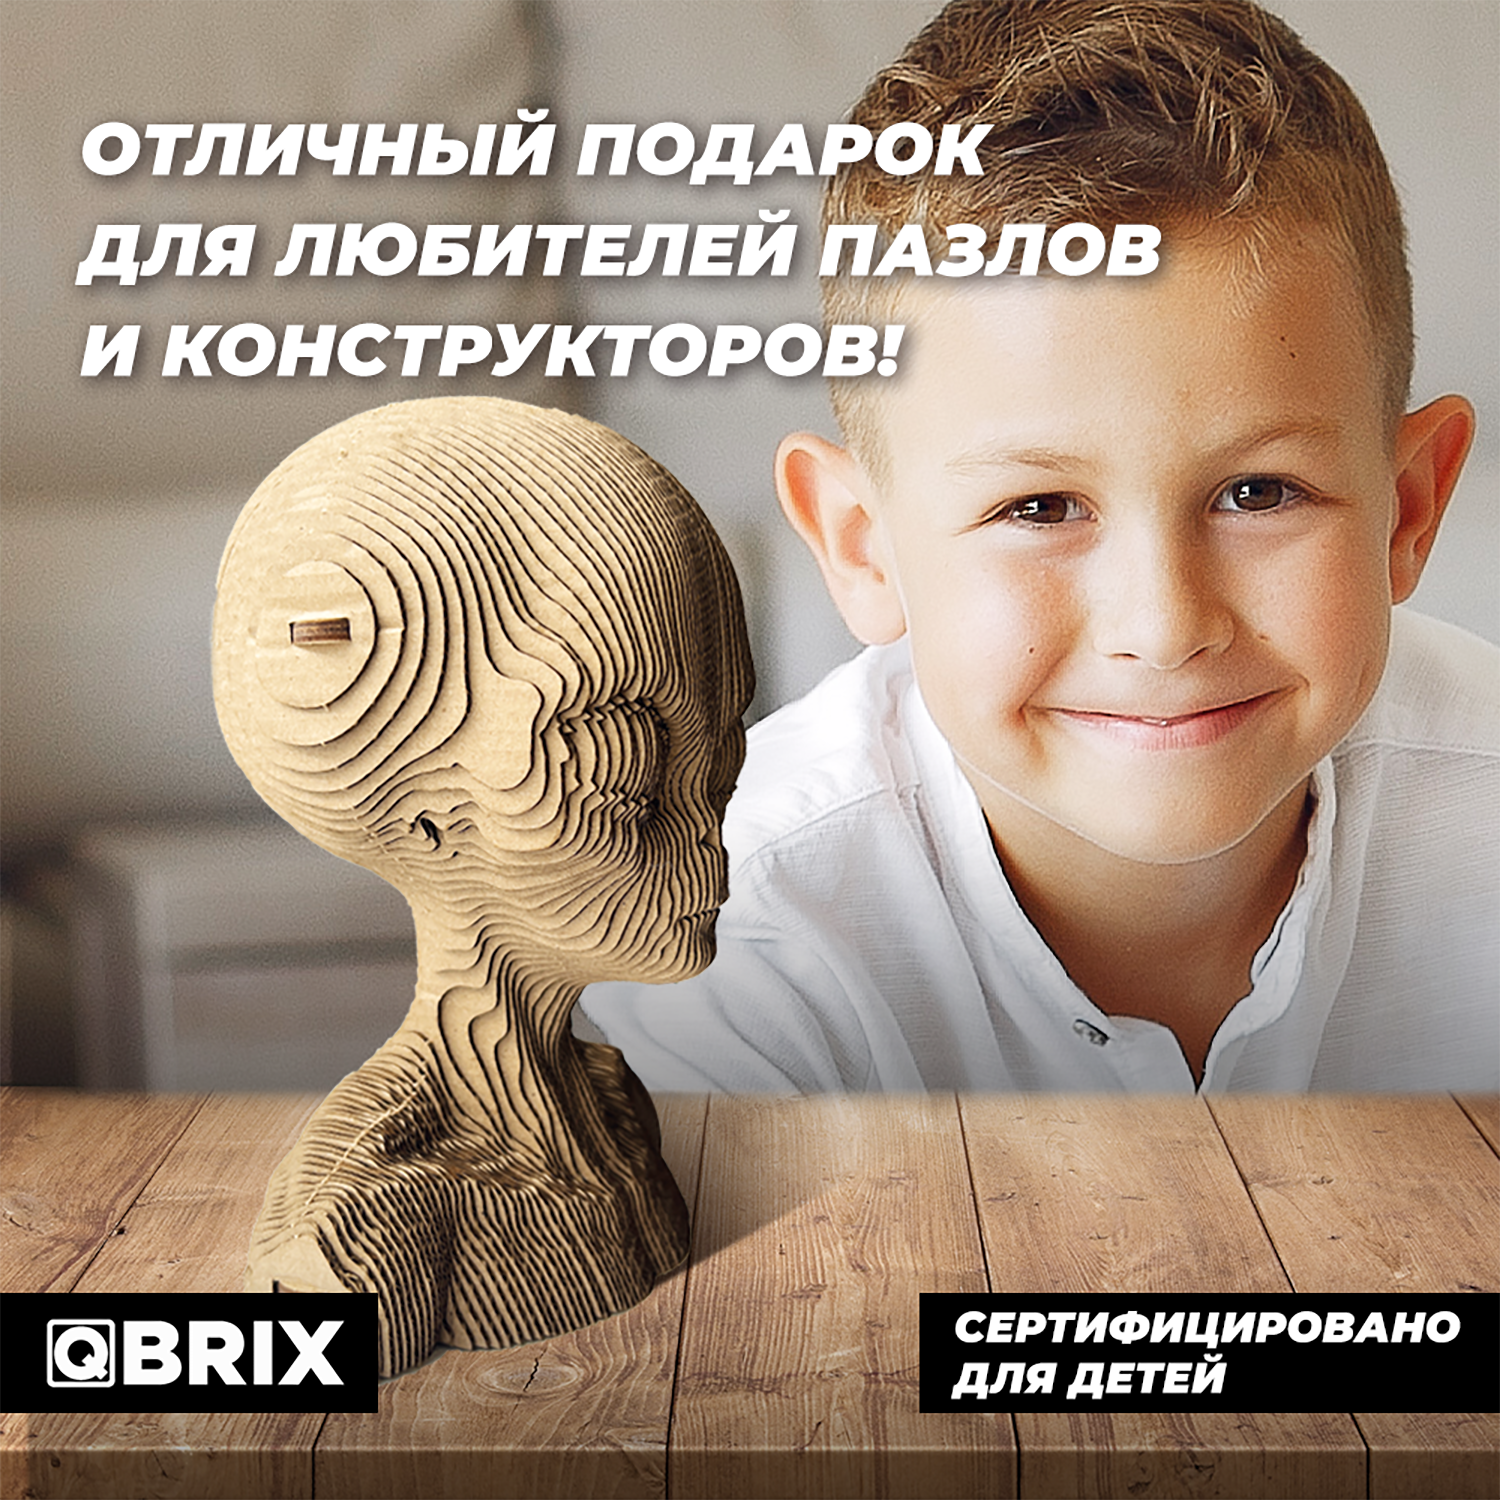 Конструктор QBRIX 3D картонный Инопланетянин 20024 20024 - фото 7